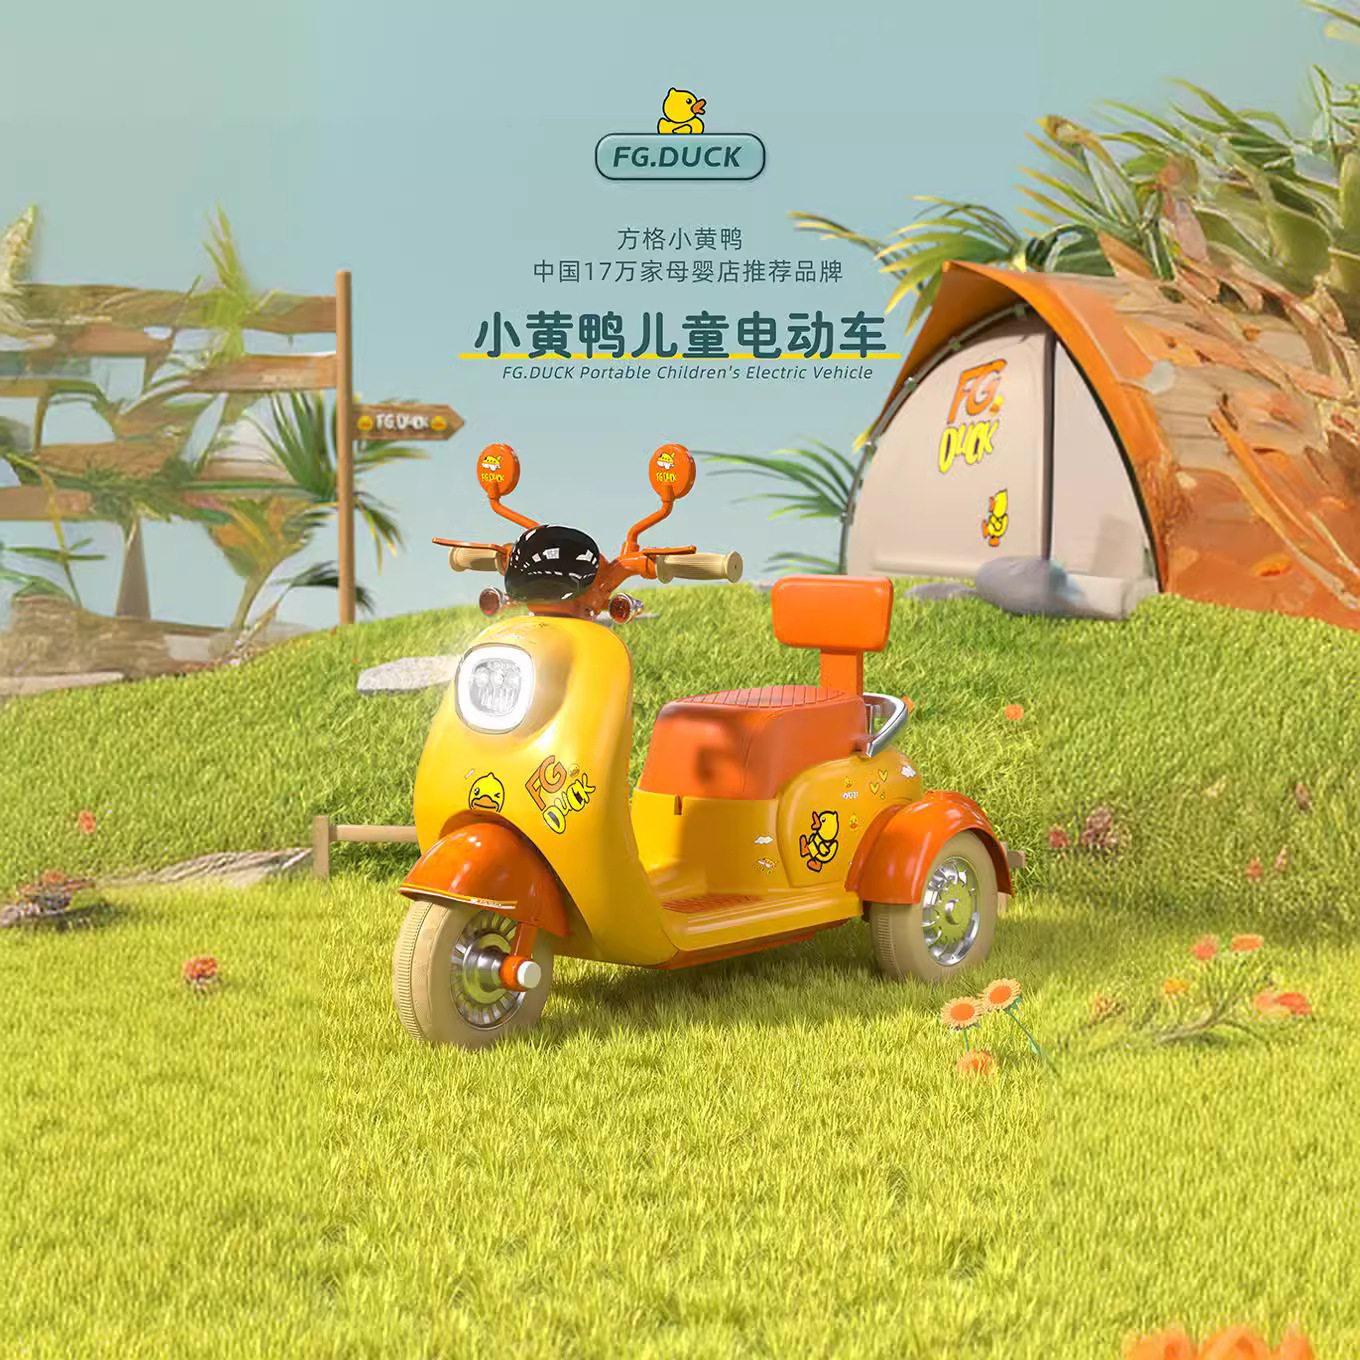 网红小黄鸭摩托车儿童电动三轮车男女孩可坐充电玩具玩具车童车